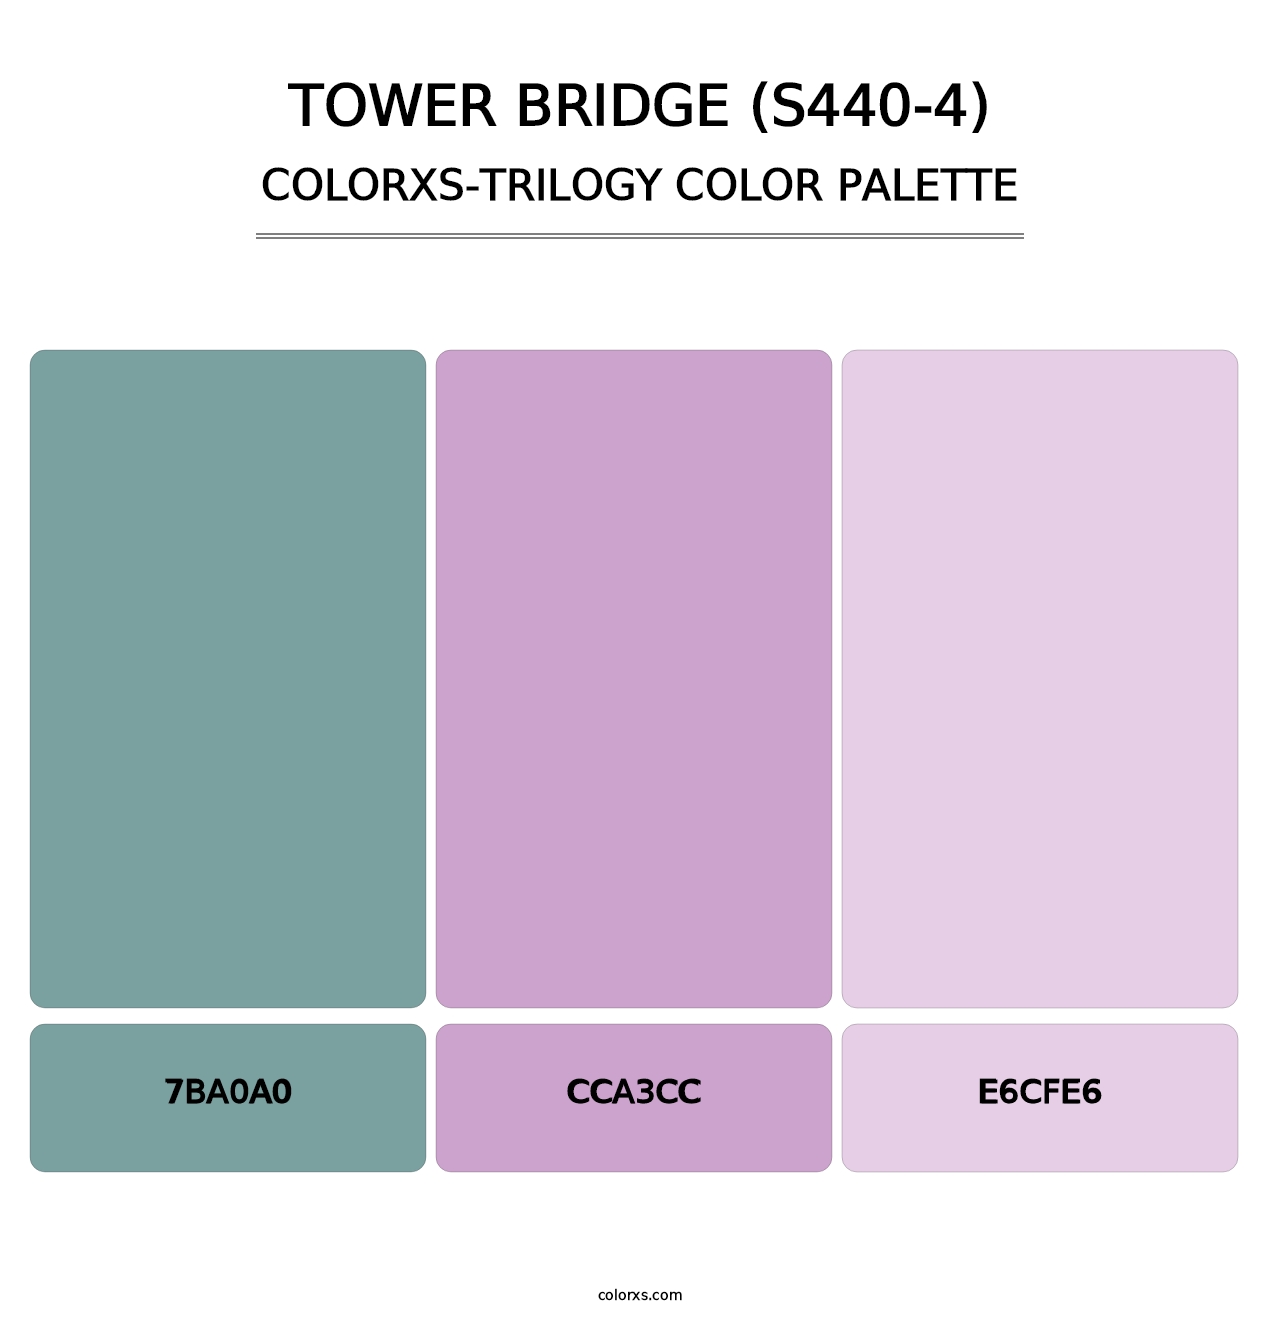 Tower Bridge (S440-4) - Colorxs Trilogy Palette